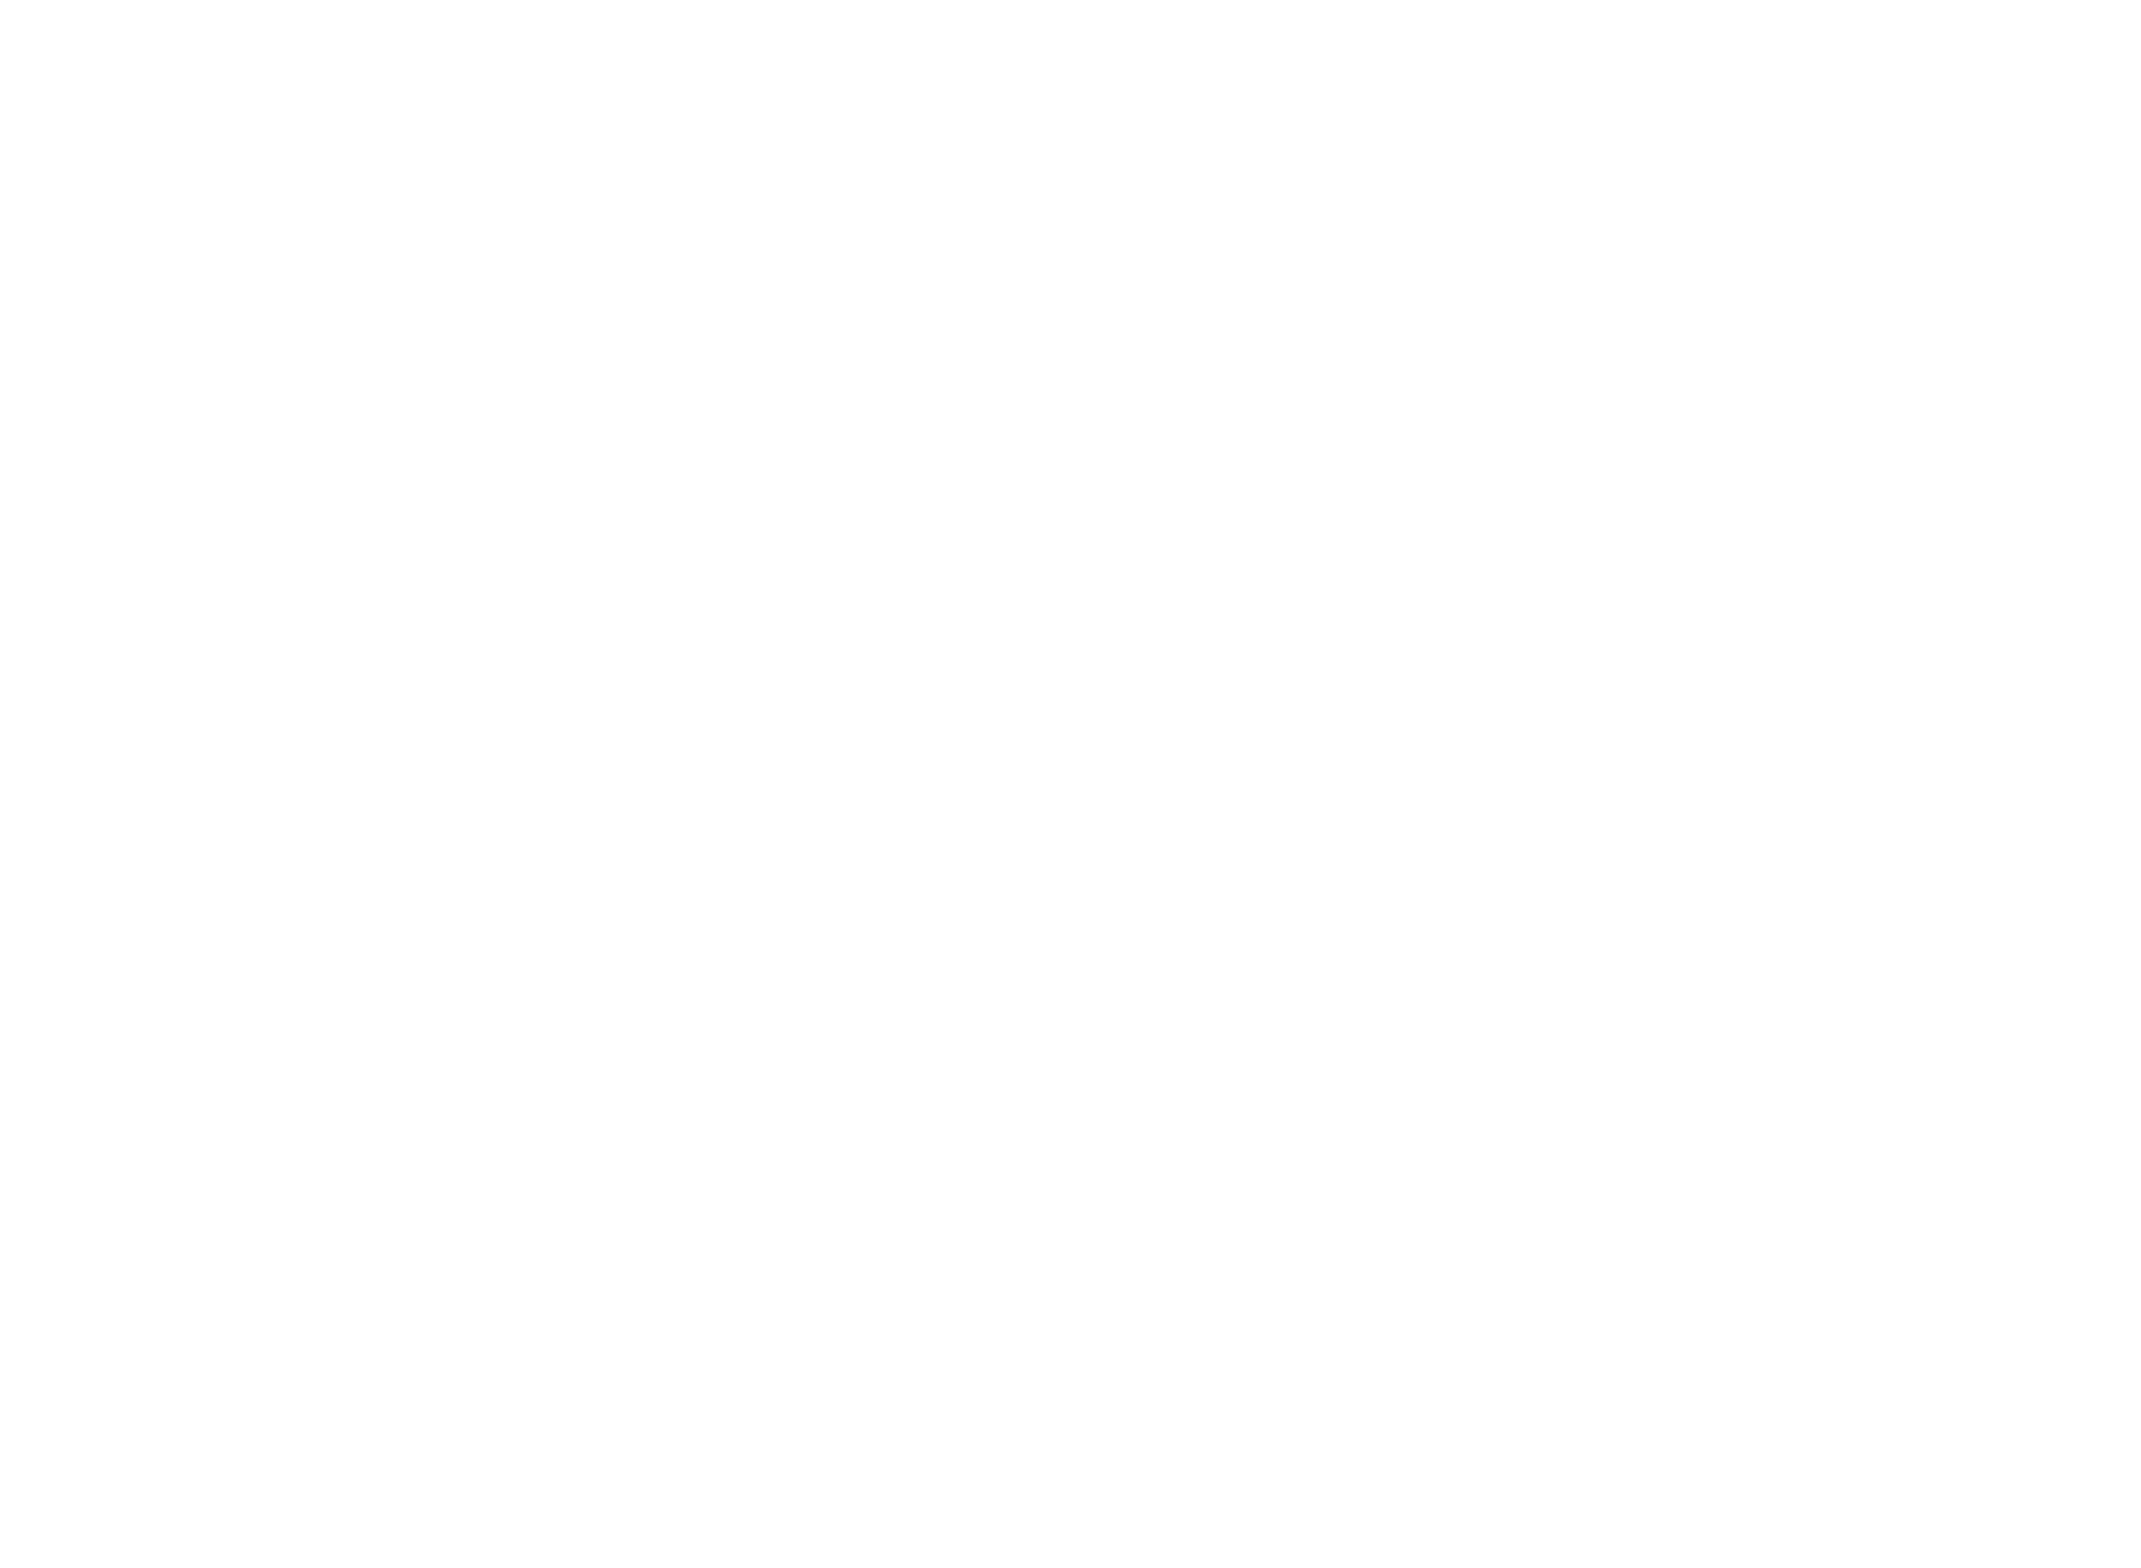 VIP transfer in London